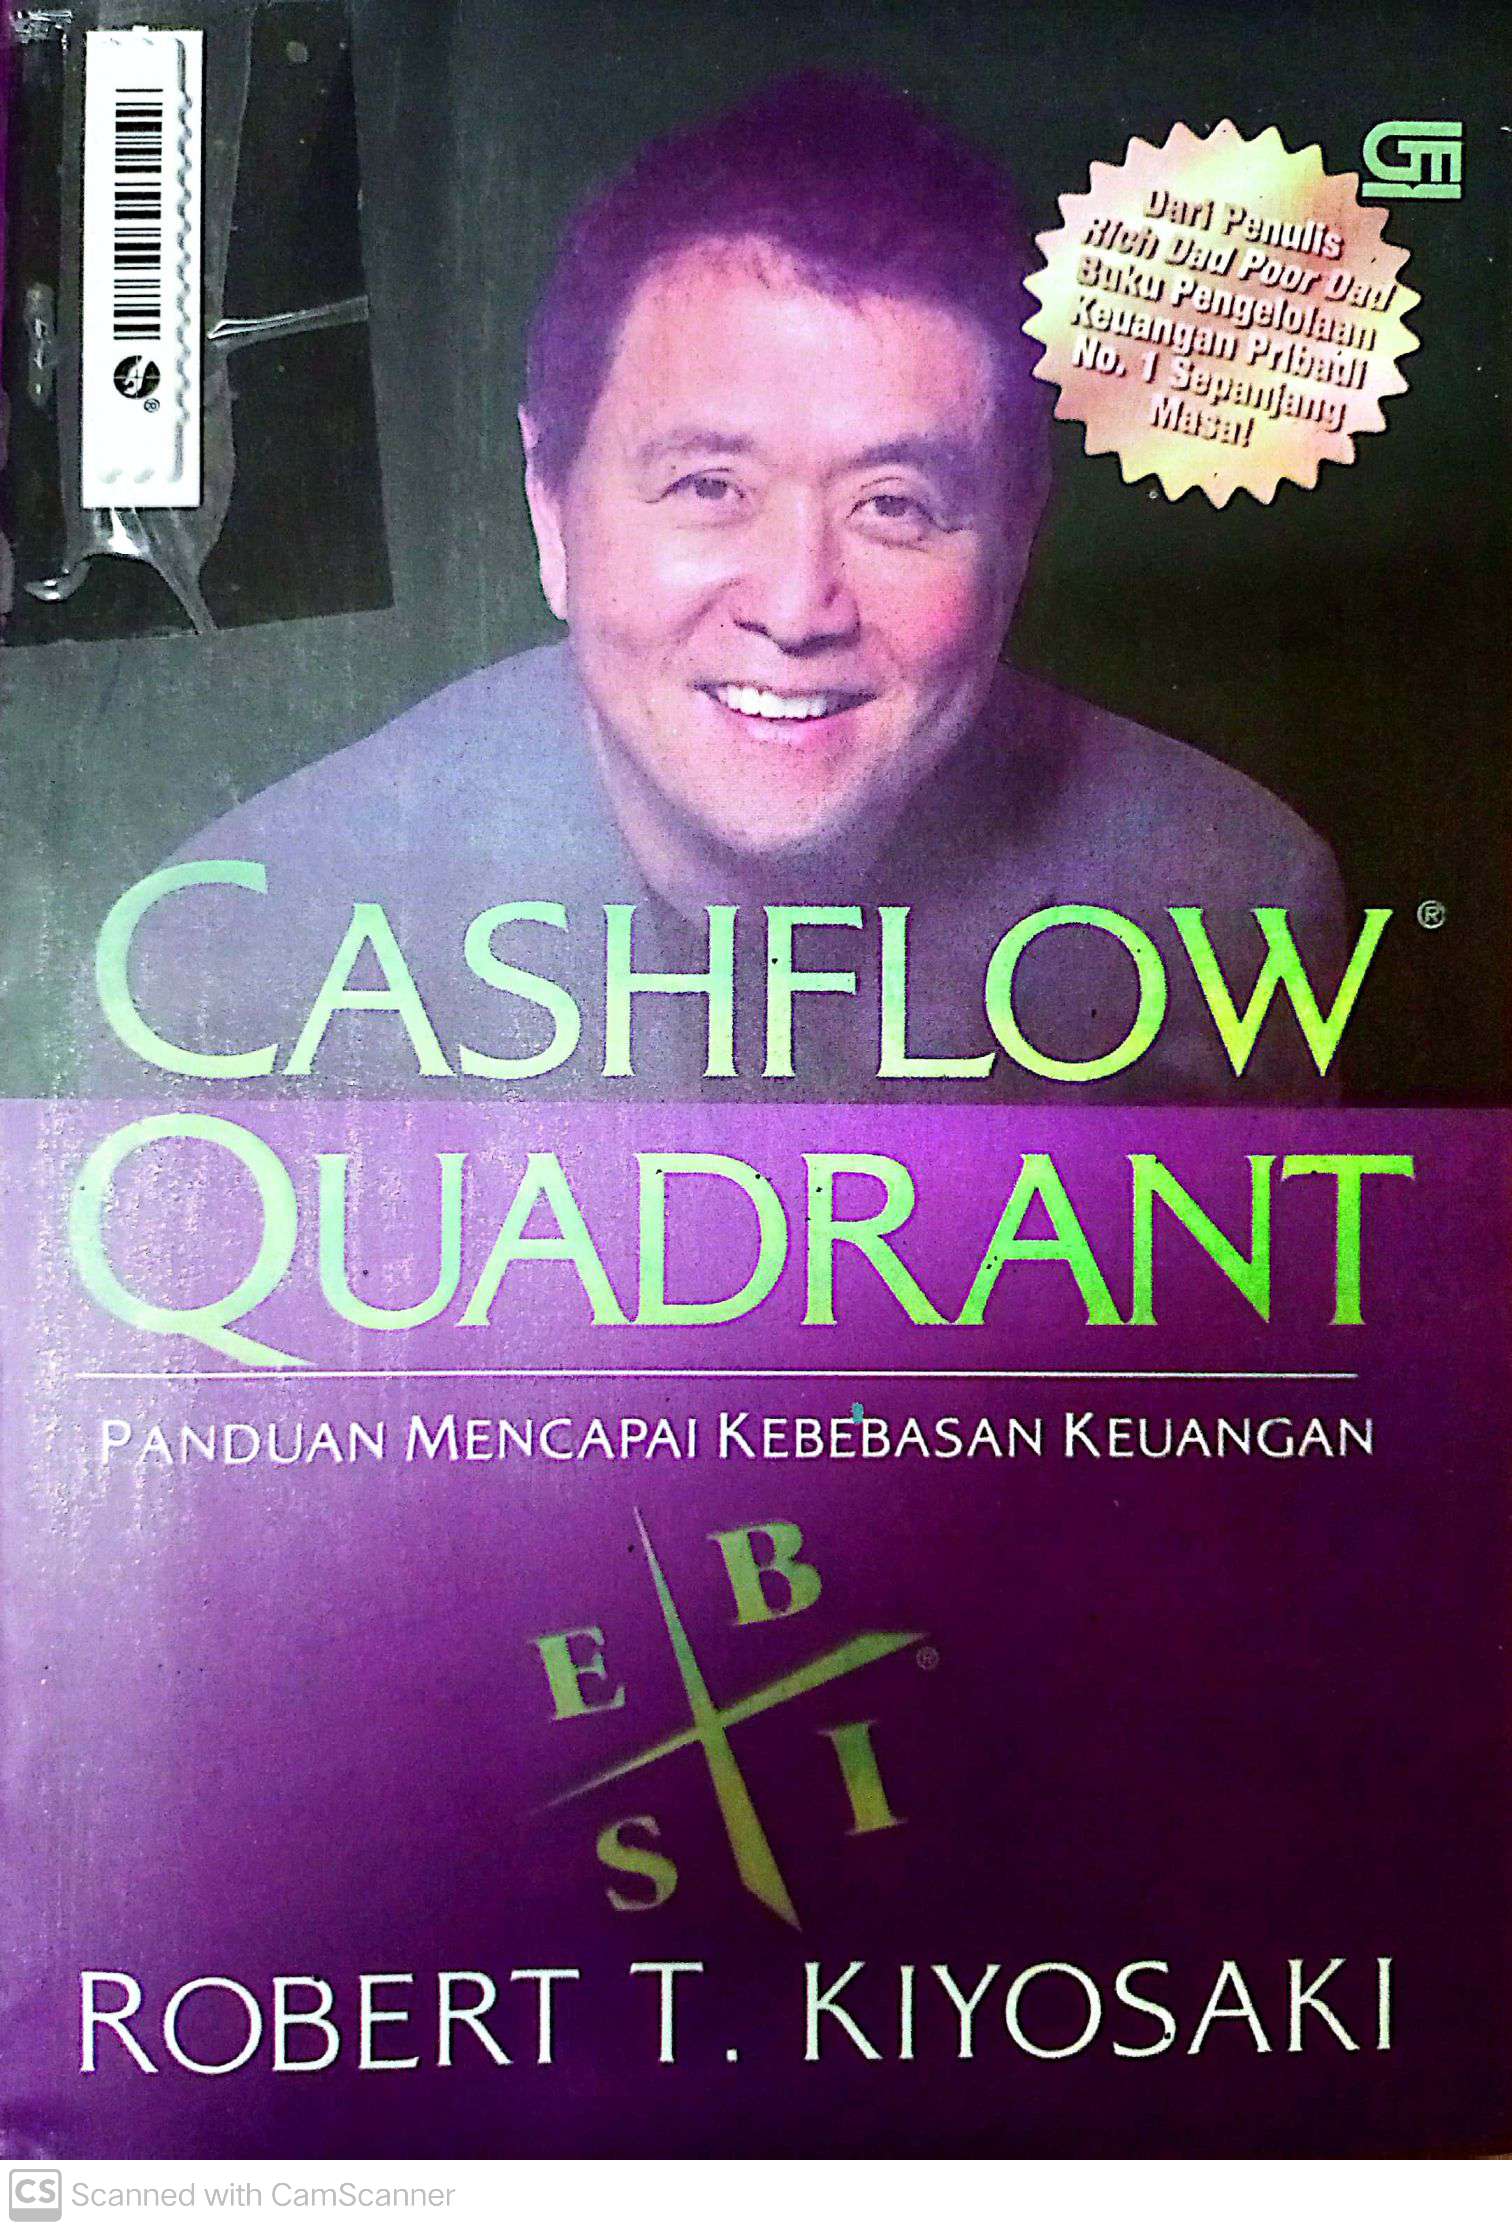 Cashflow Qaudrant : Panduan Mencapai Kebebasan Keuangan